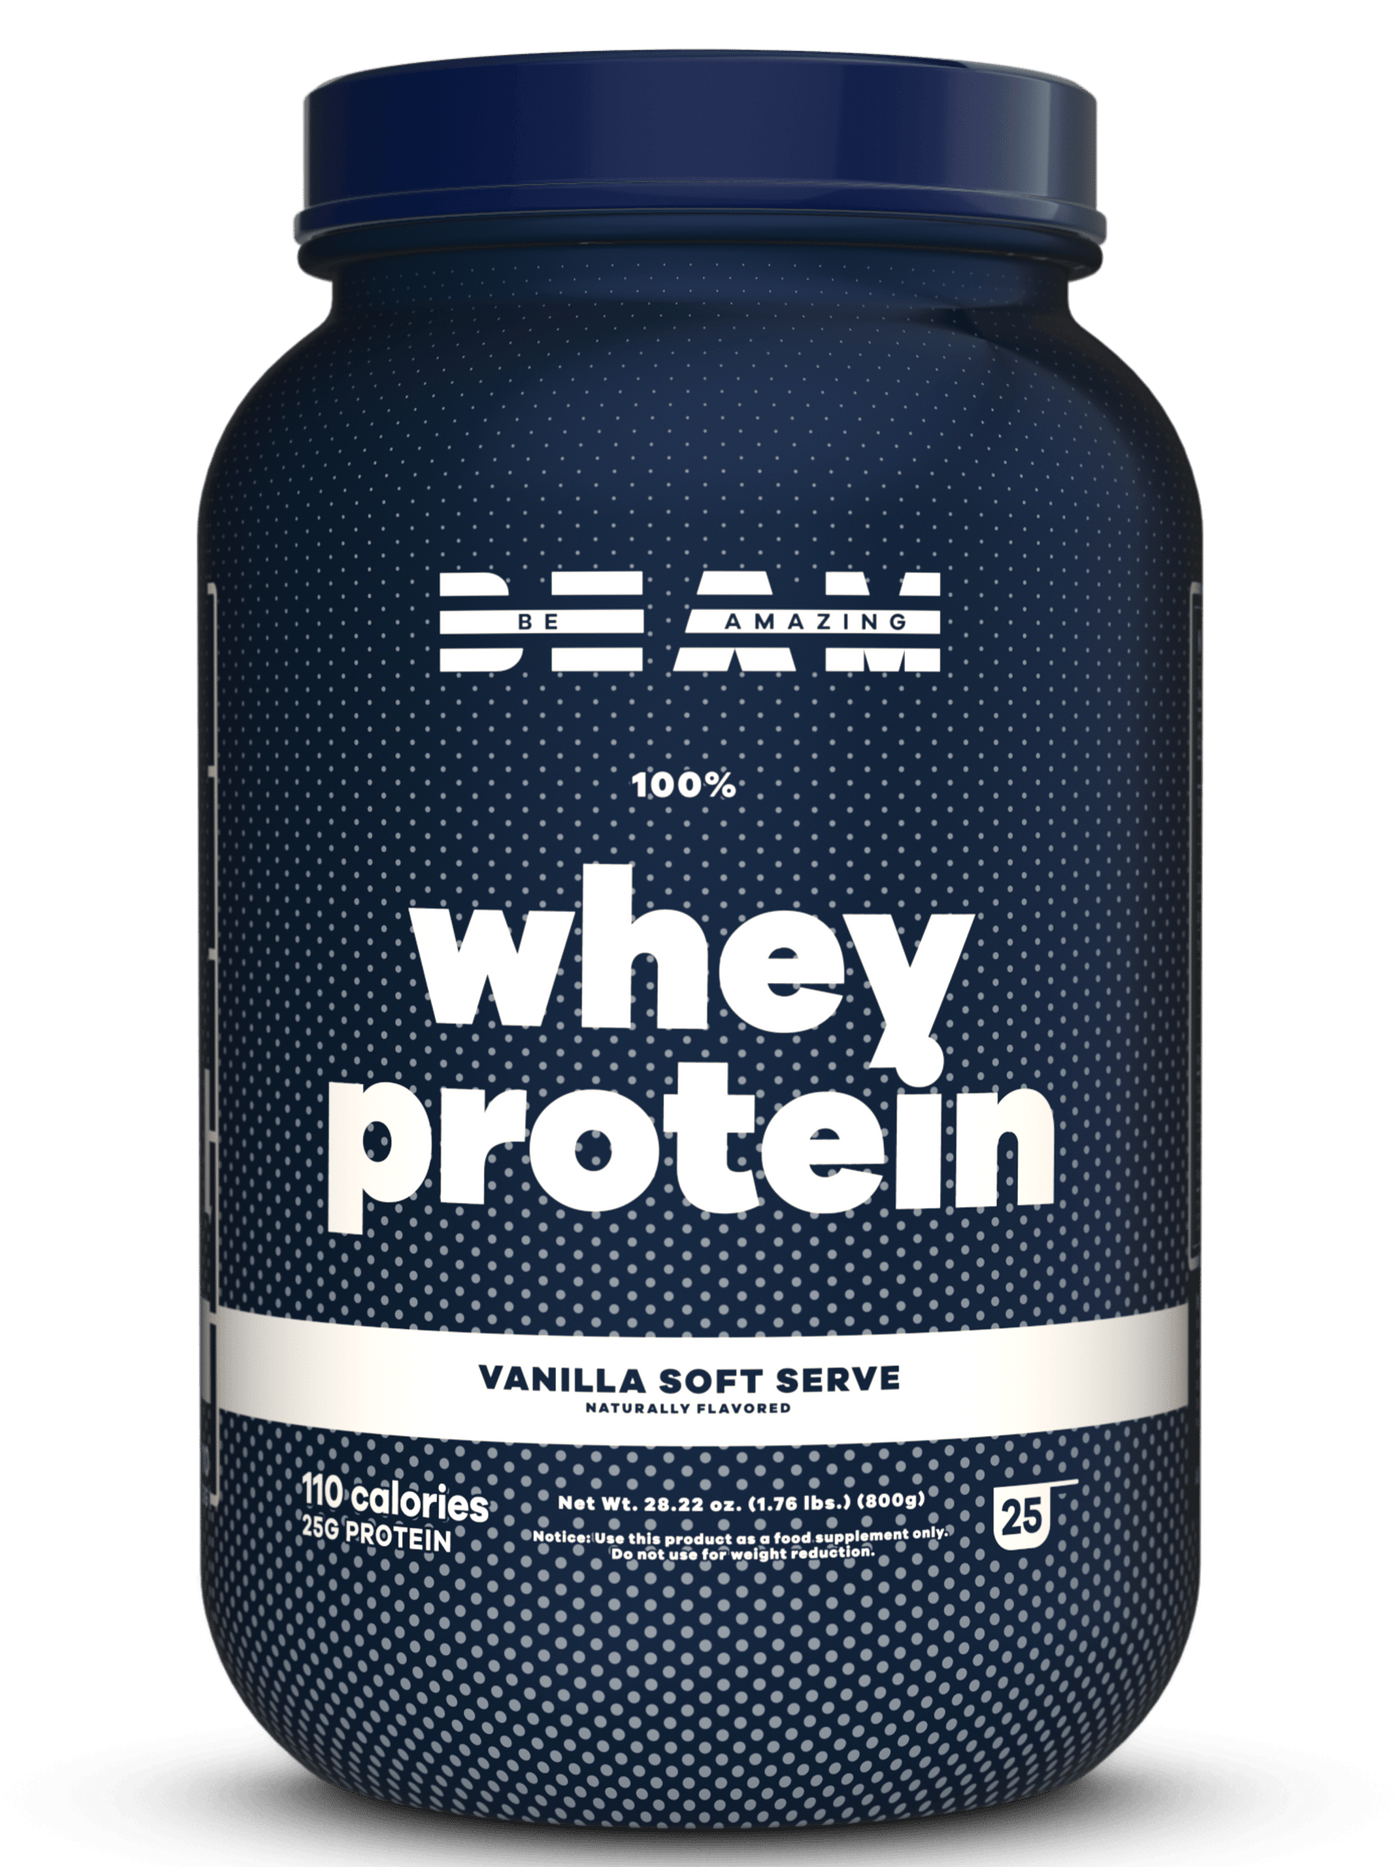 BEAM Premium whey protein Isolate Powder Supplement l